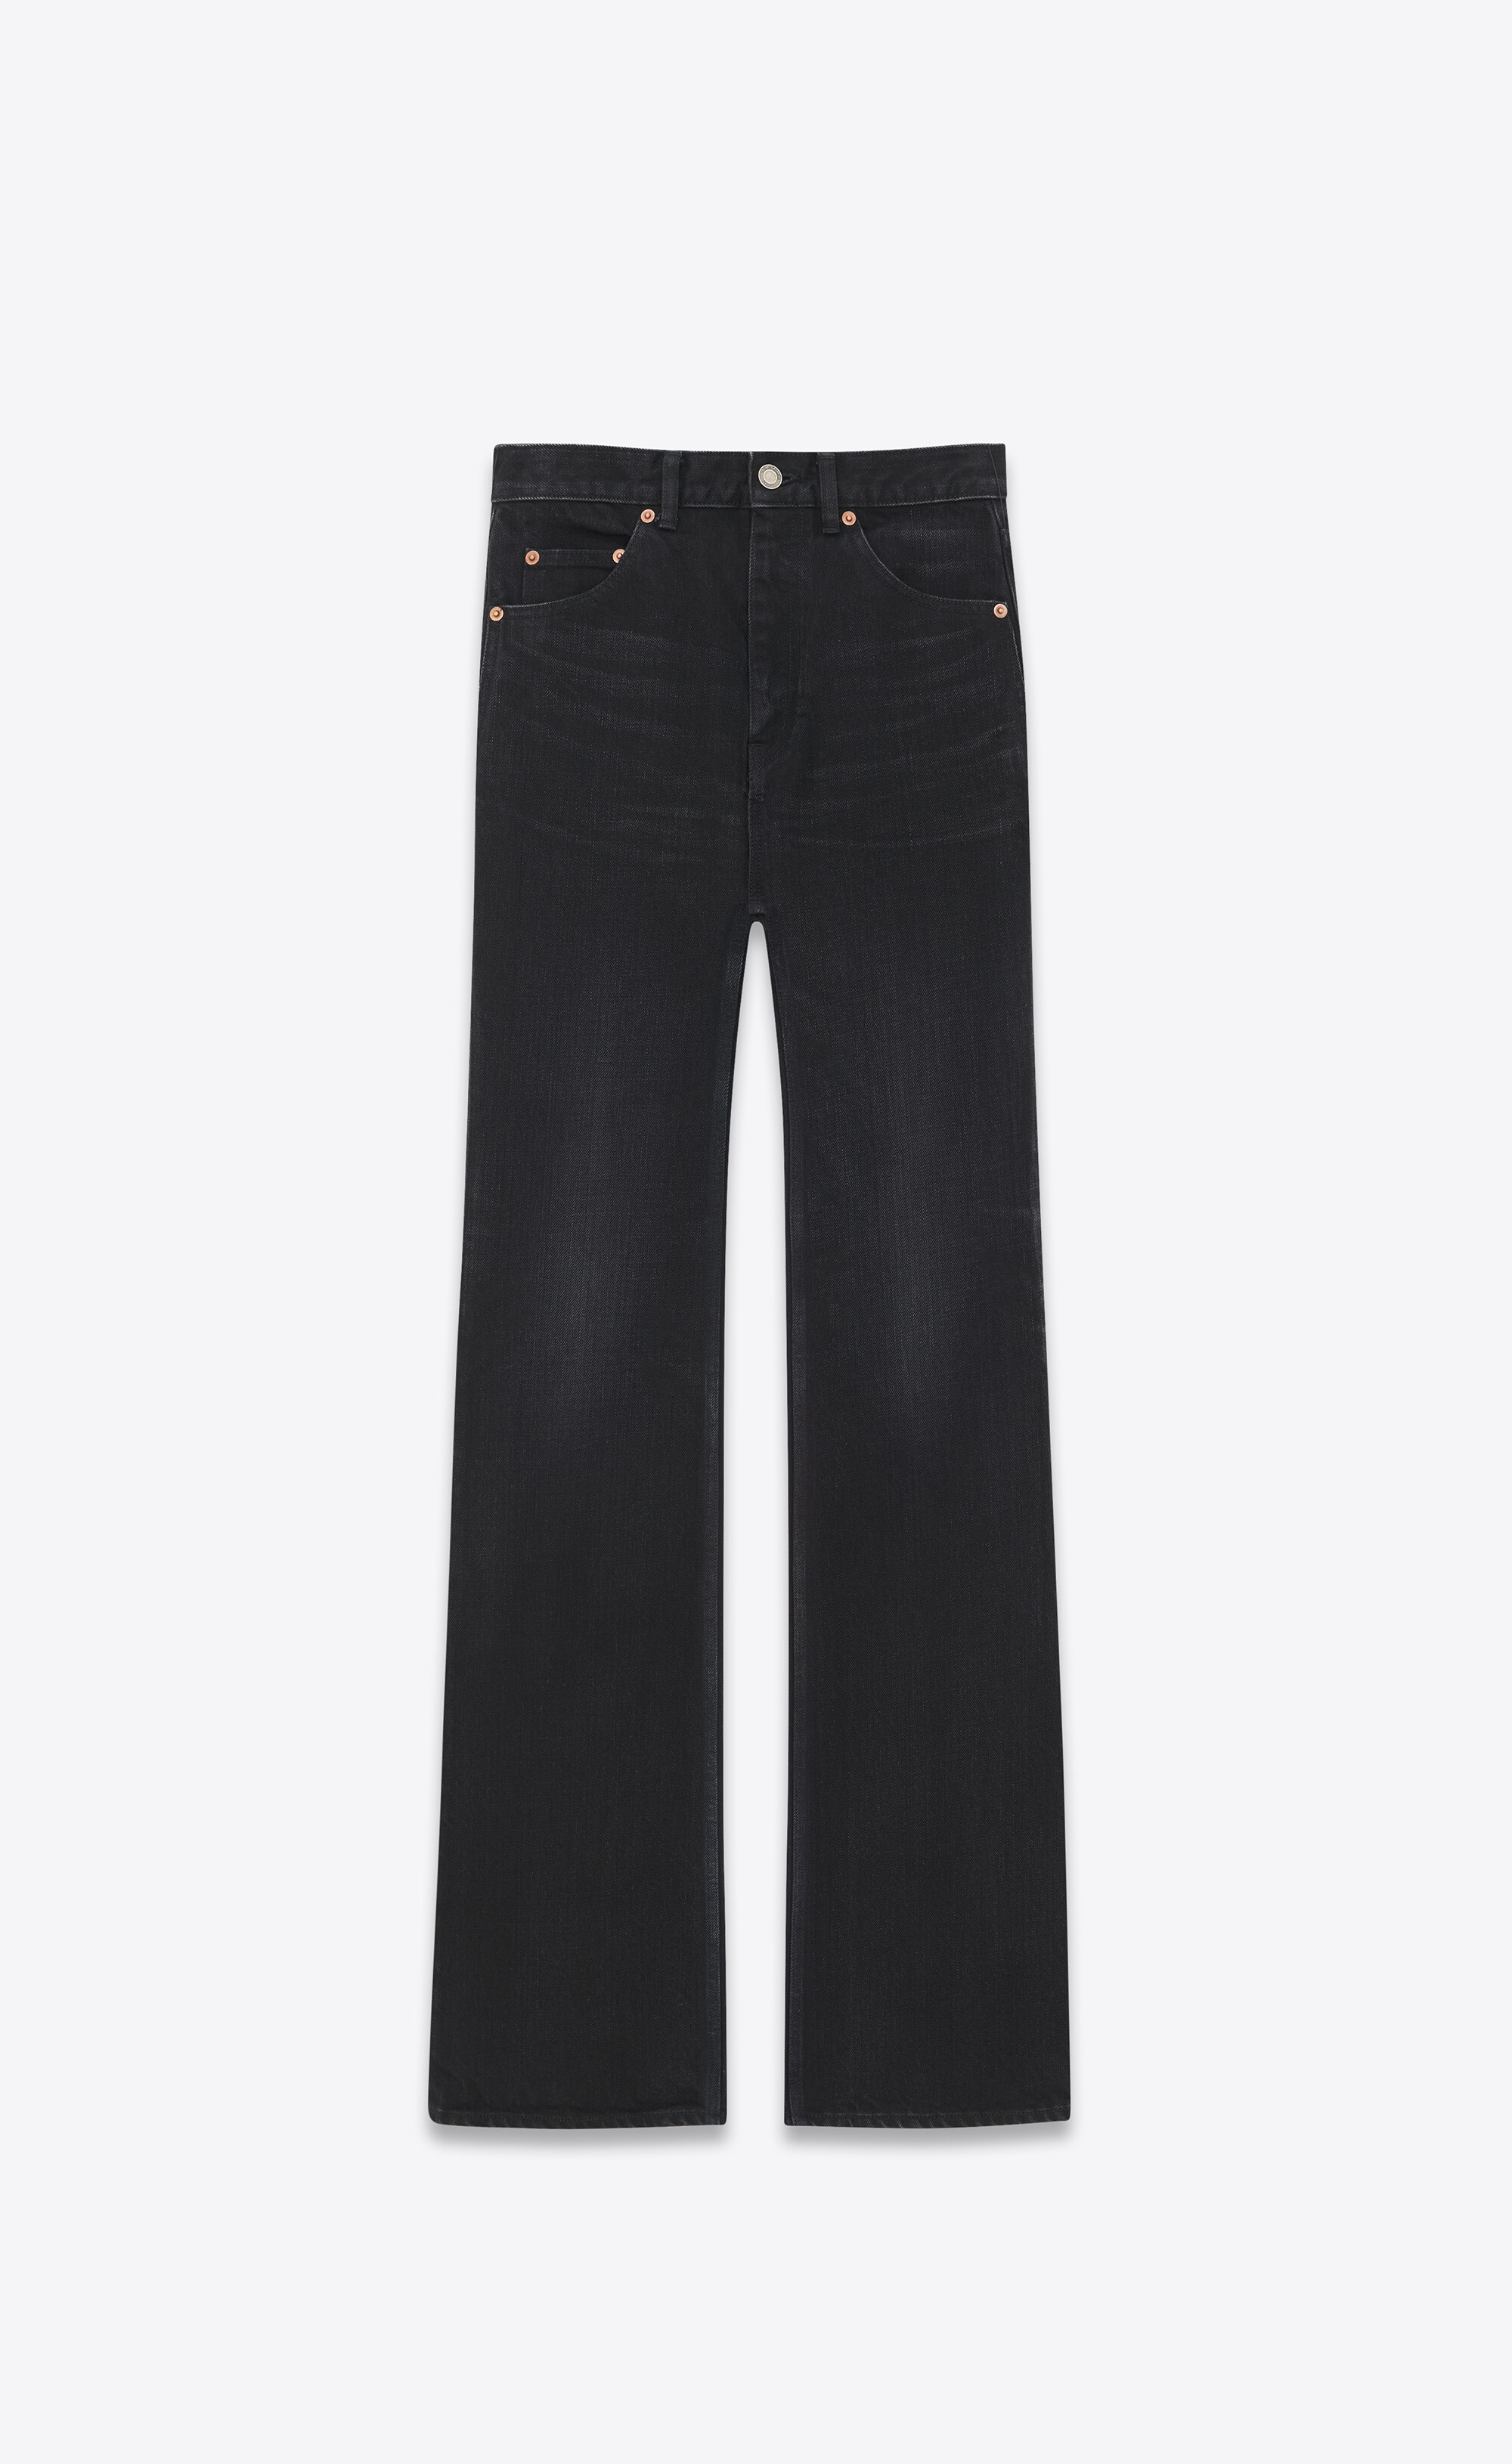 Black 70s flared jeans, Saint Laurent